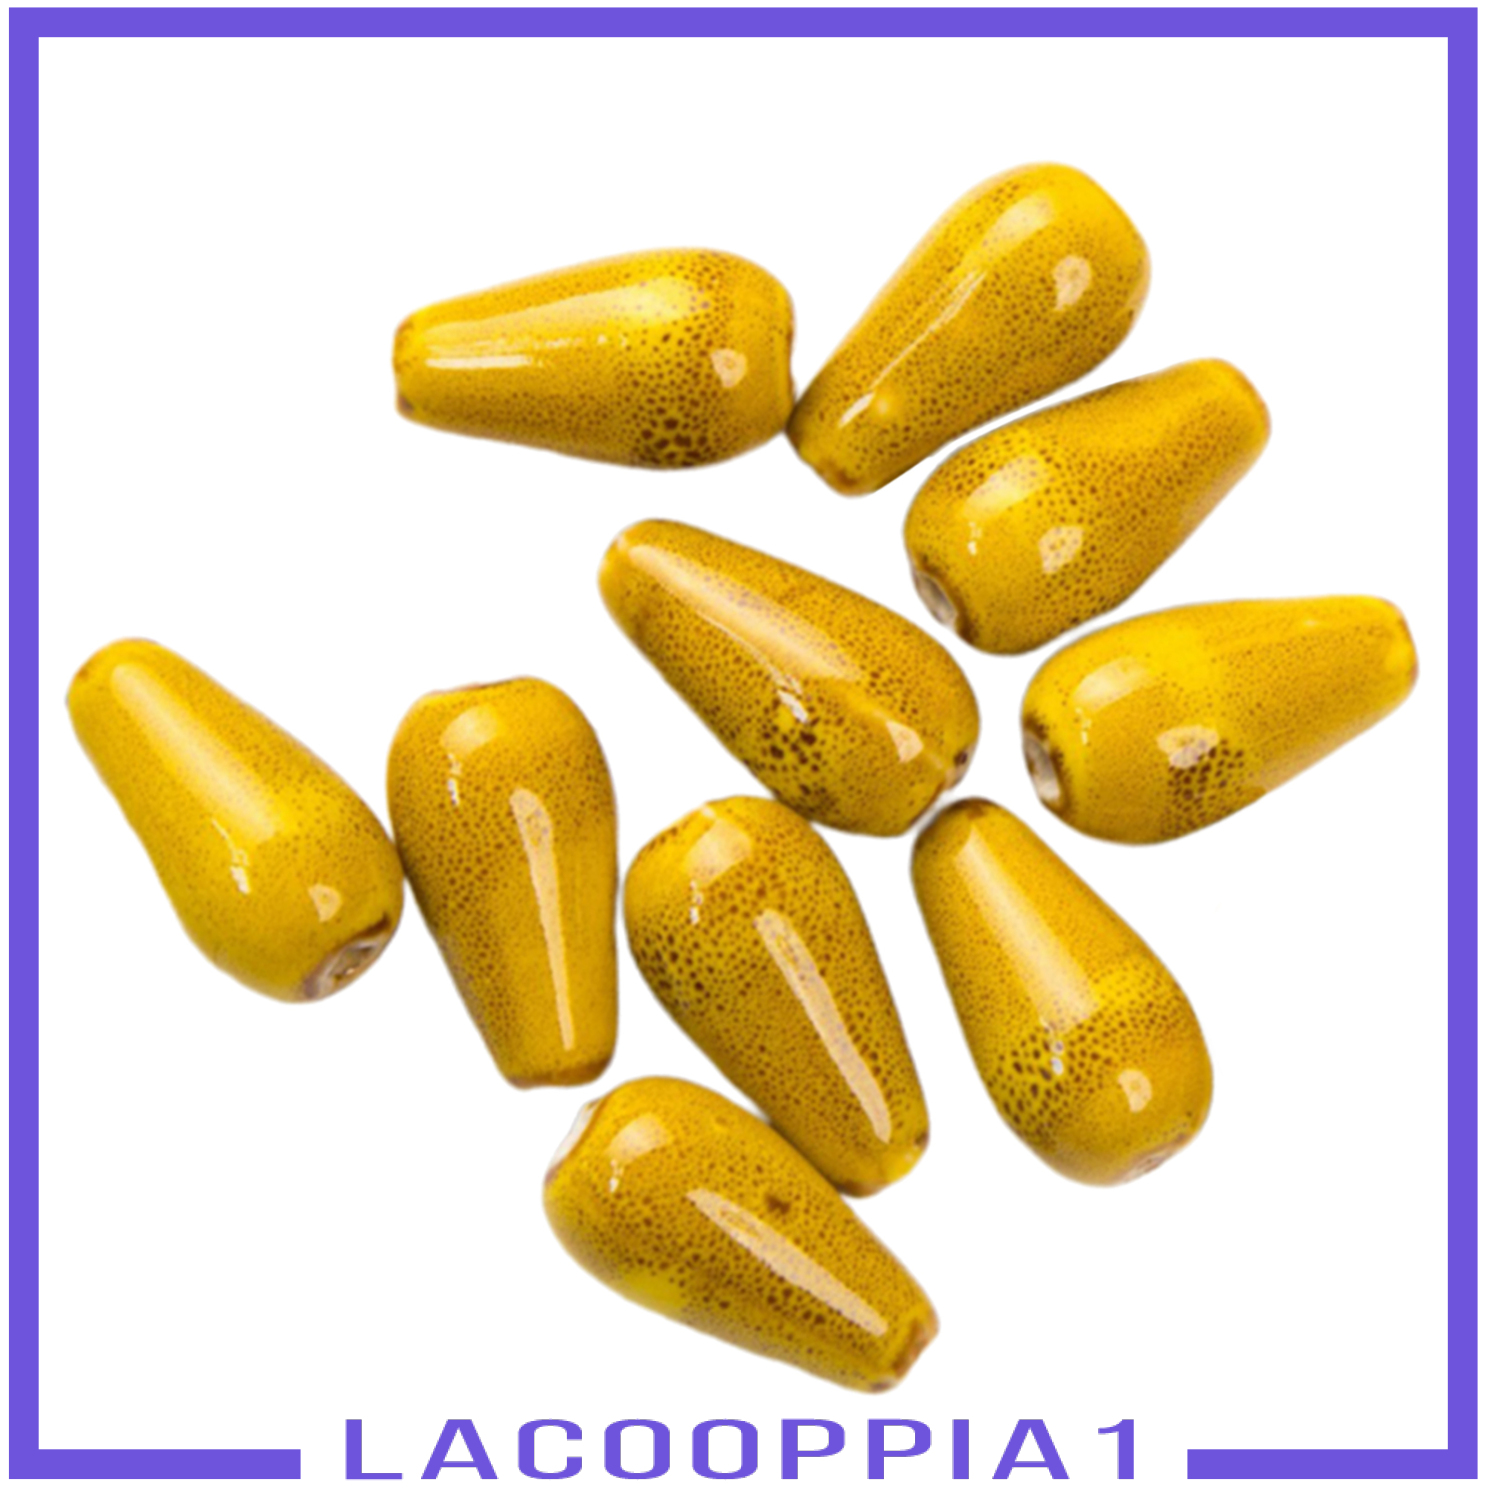 Bộ Hạt Cườm Hình Giọt Nước Bằng Gốm (Lacoopppia1)